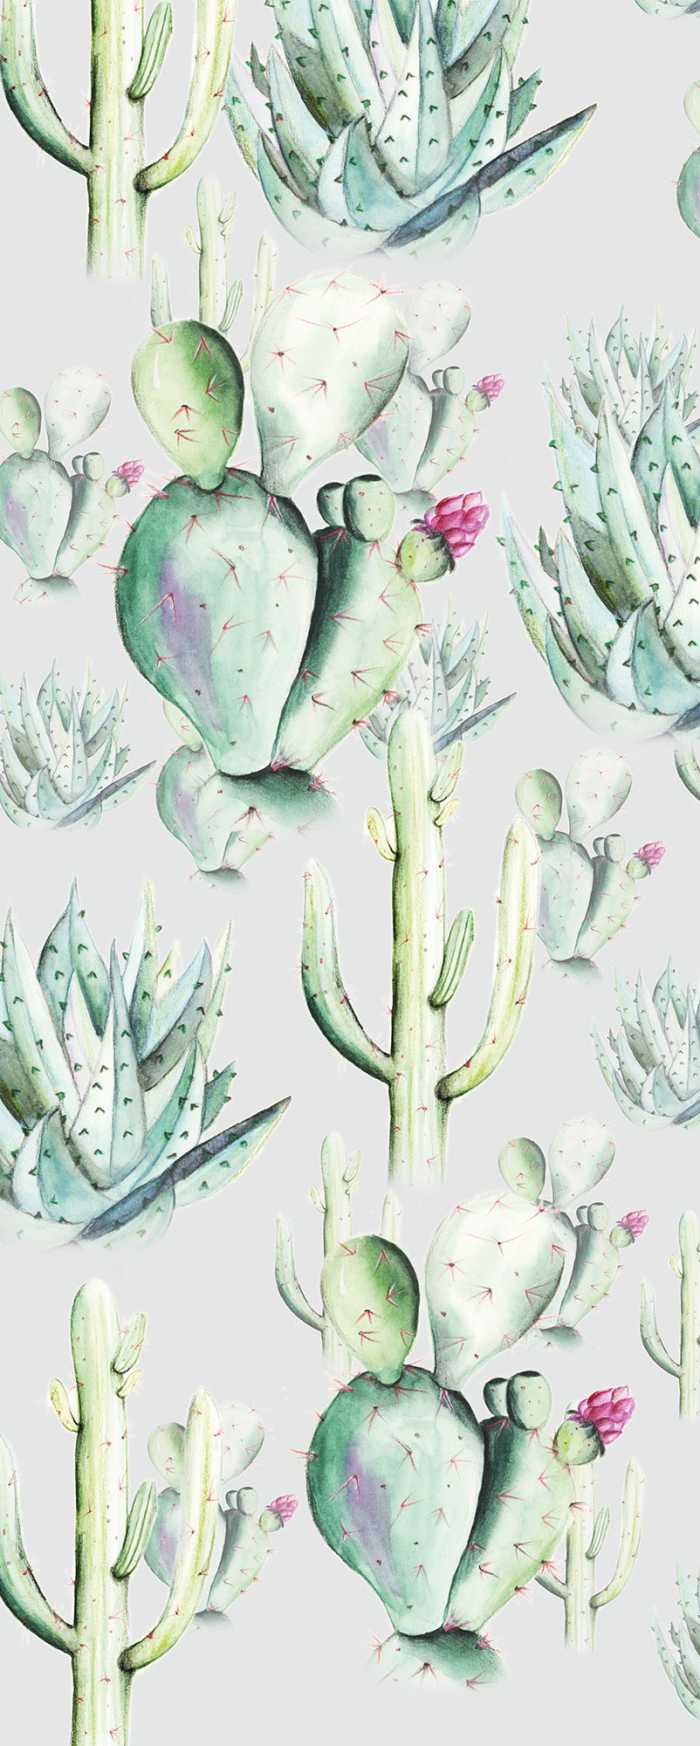 Digital wallpaper Cactus Grey